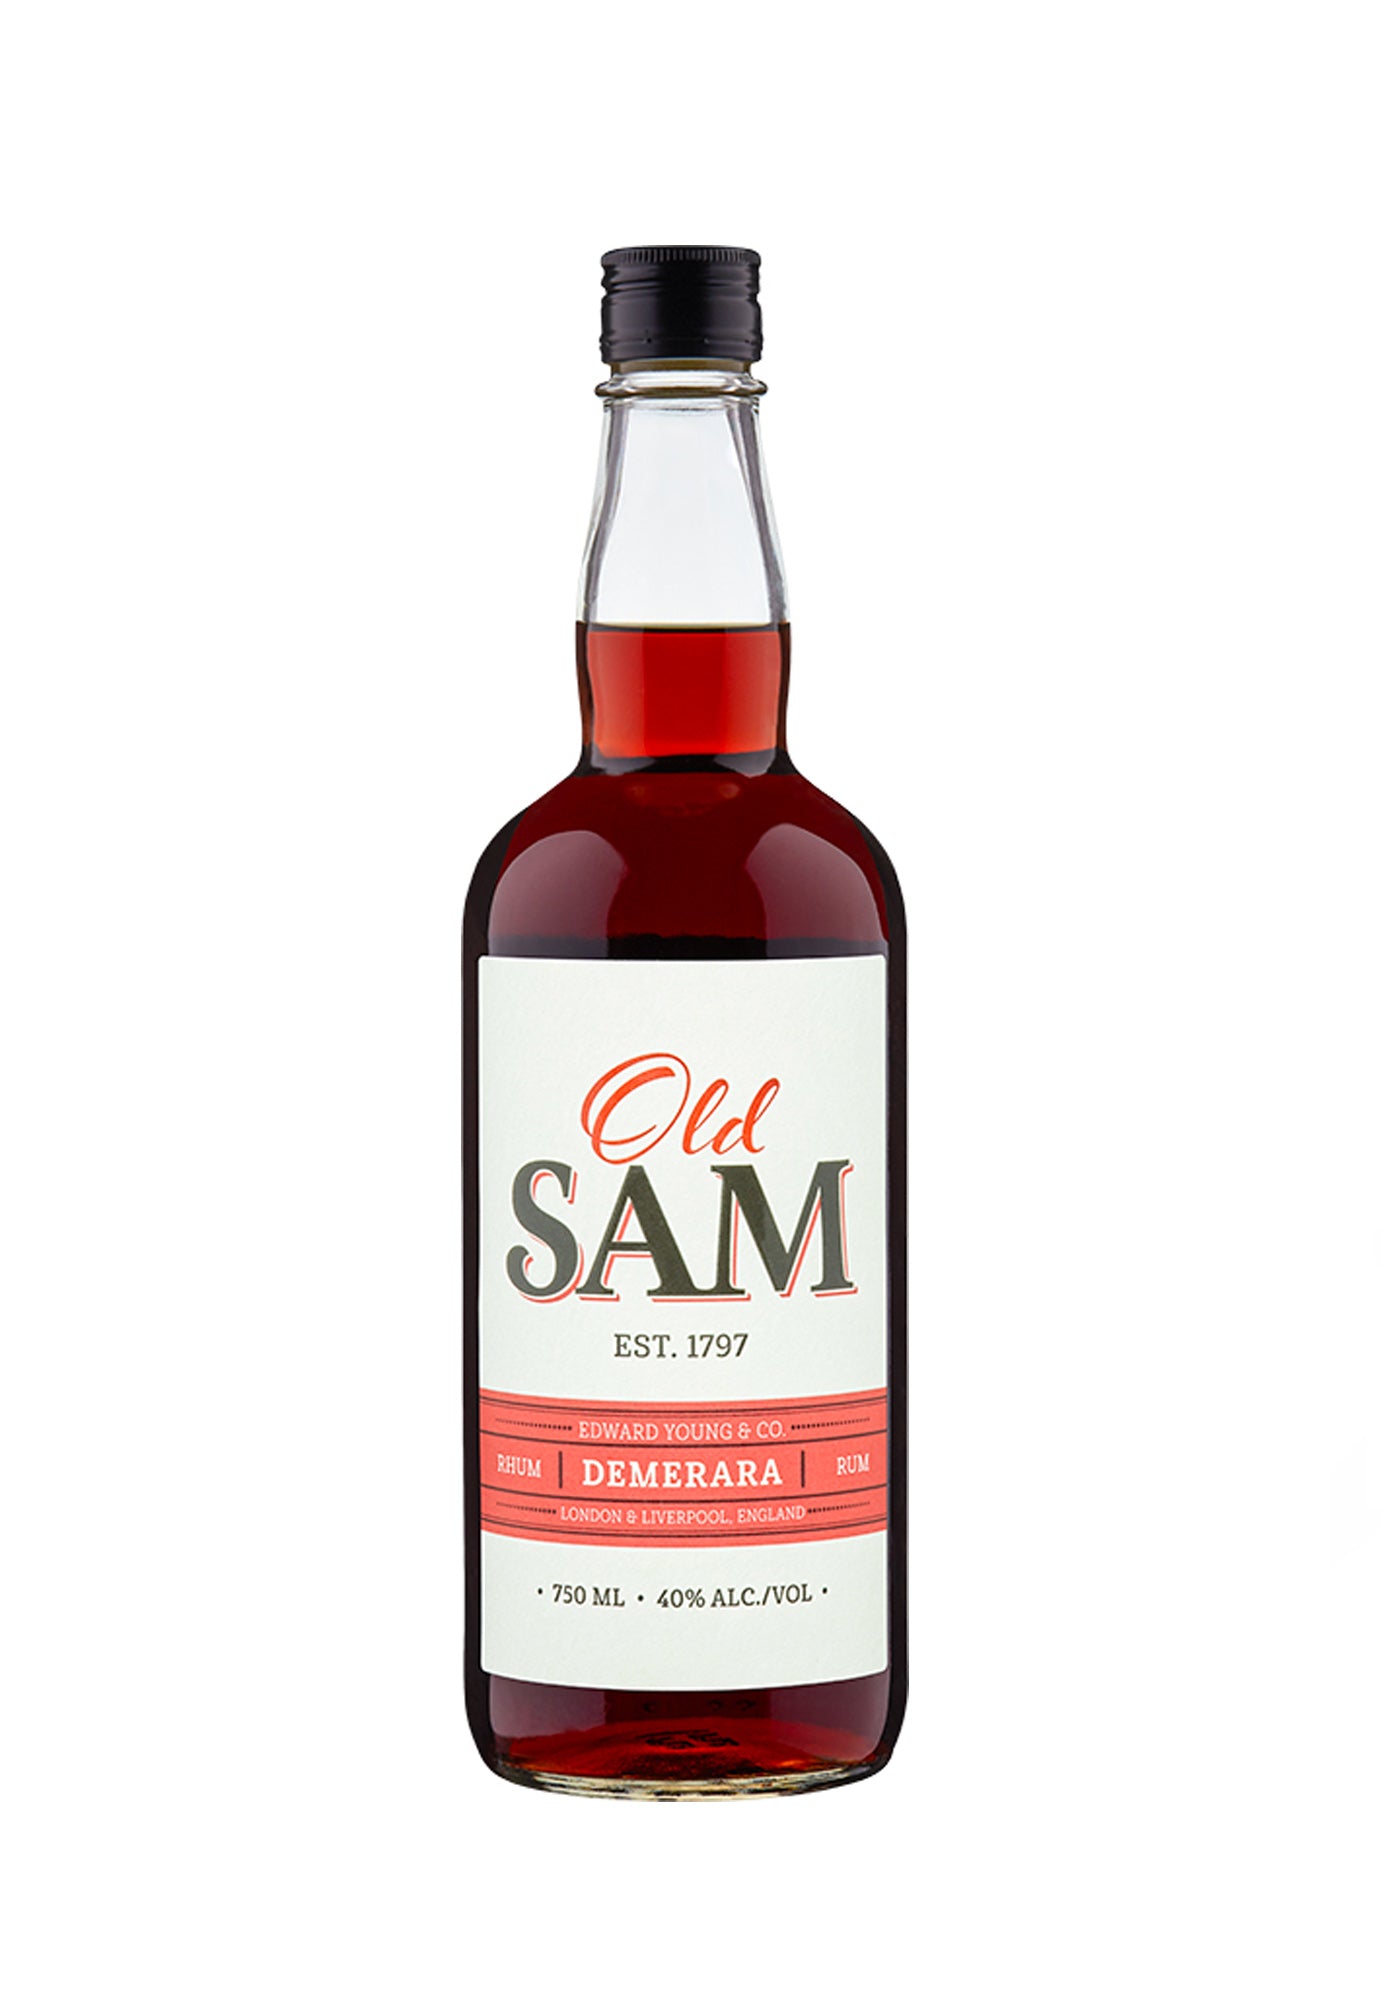 Young's Old Sam Demerara Rum